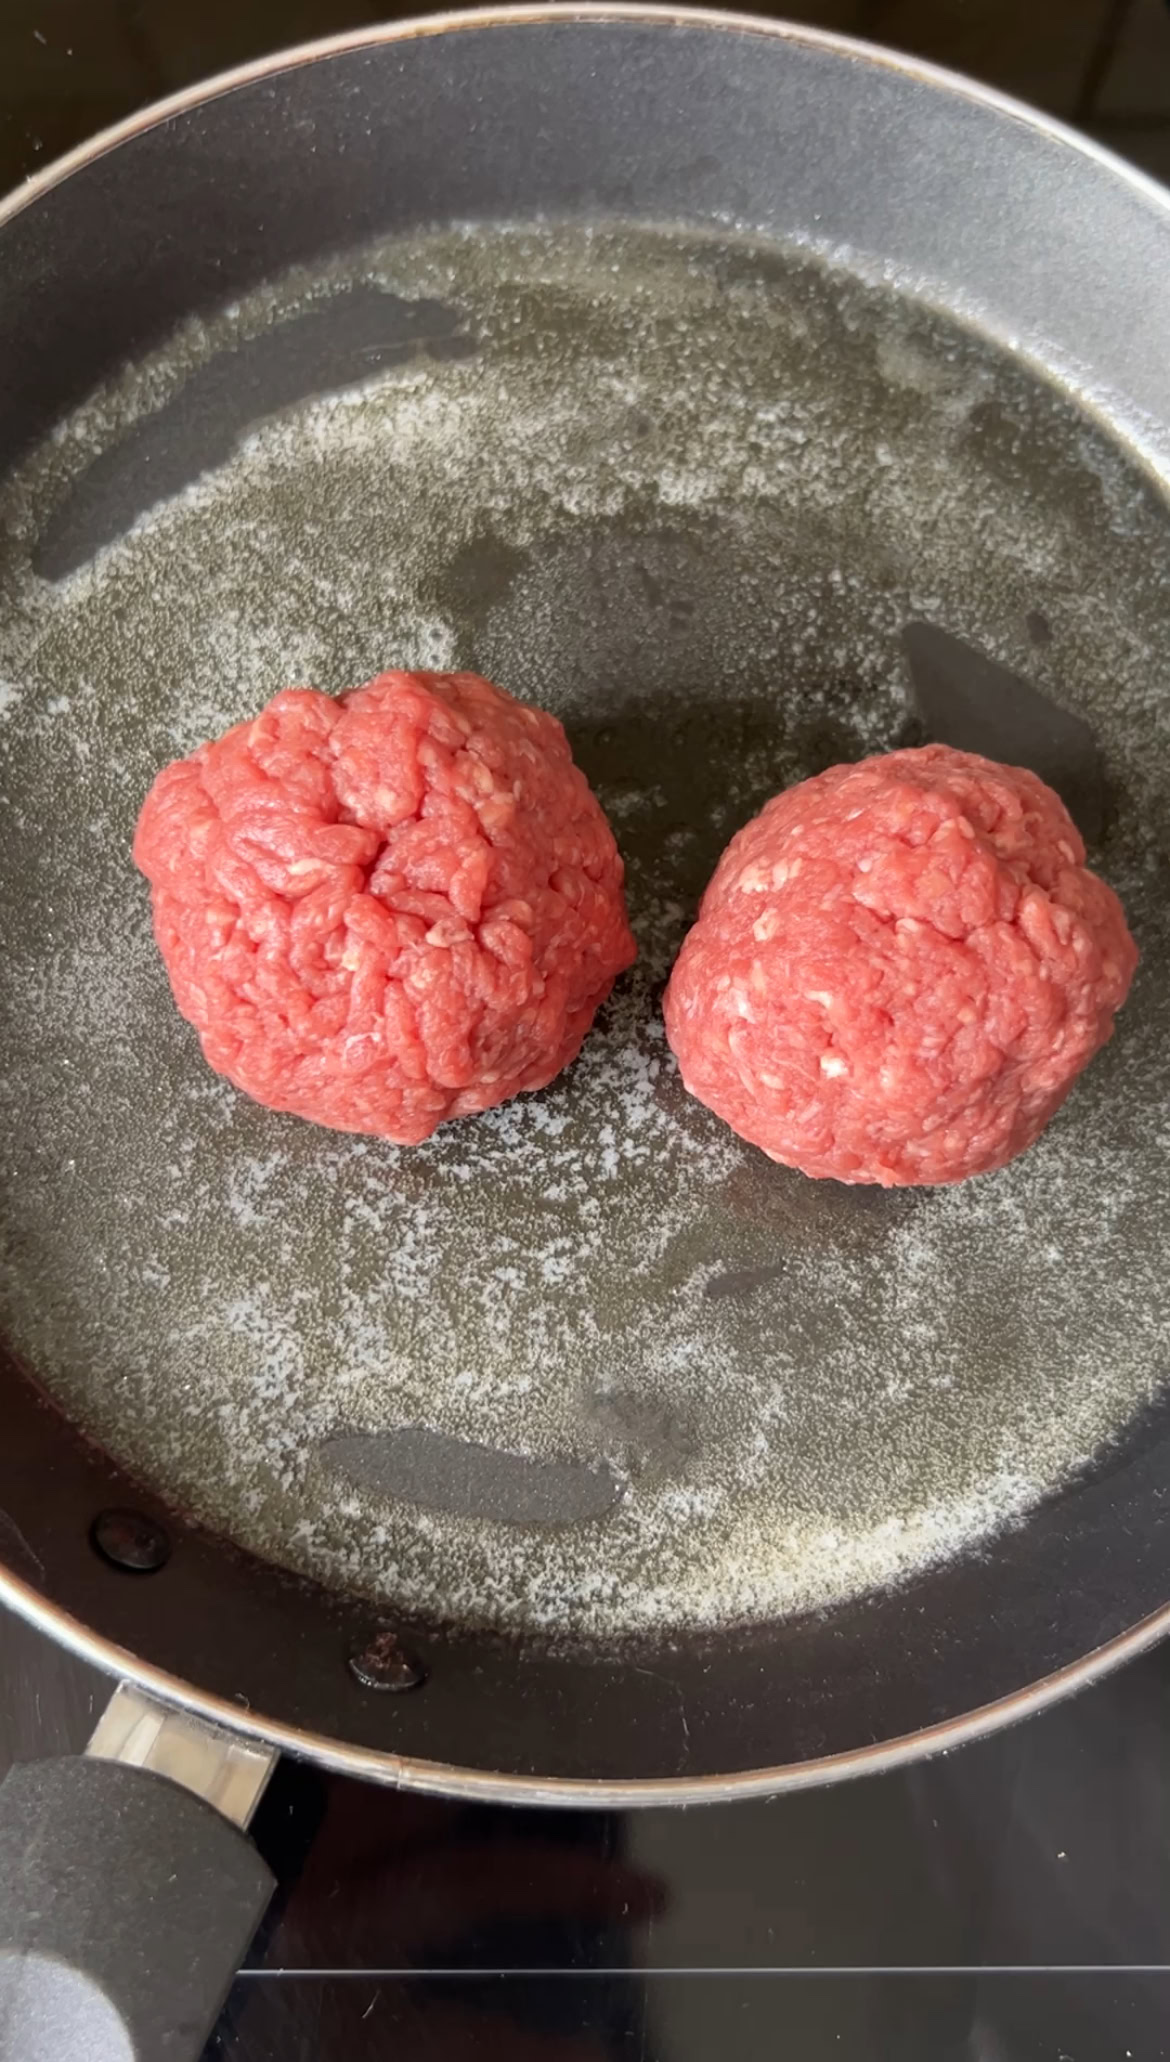 Deux boules de viande hachée dans une poêle noire avec du beurre.